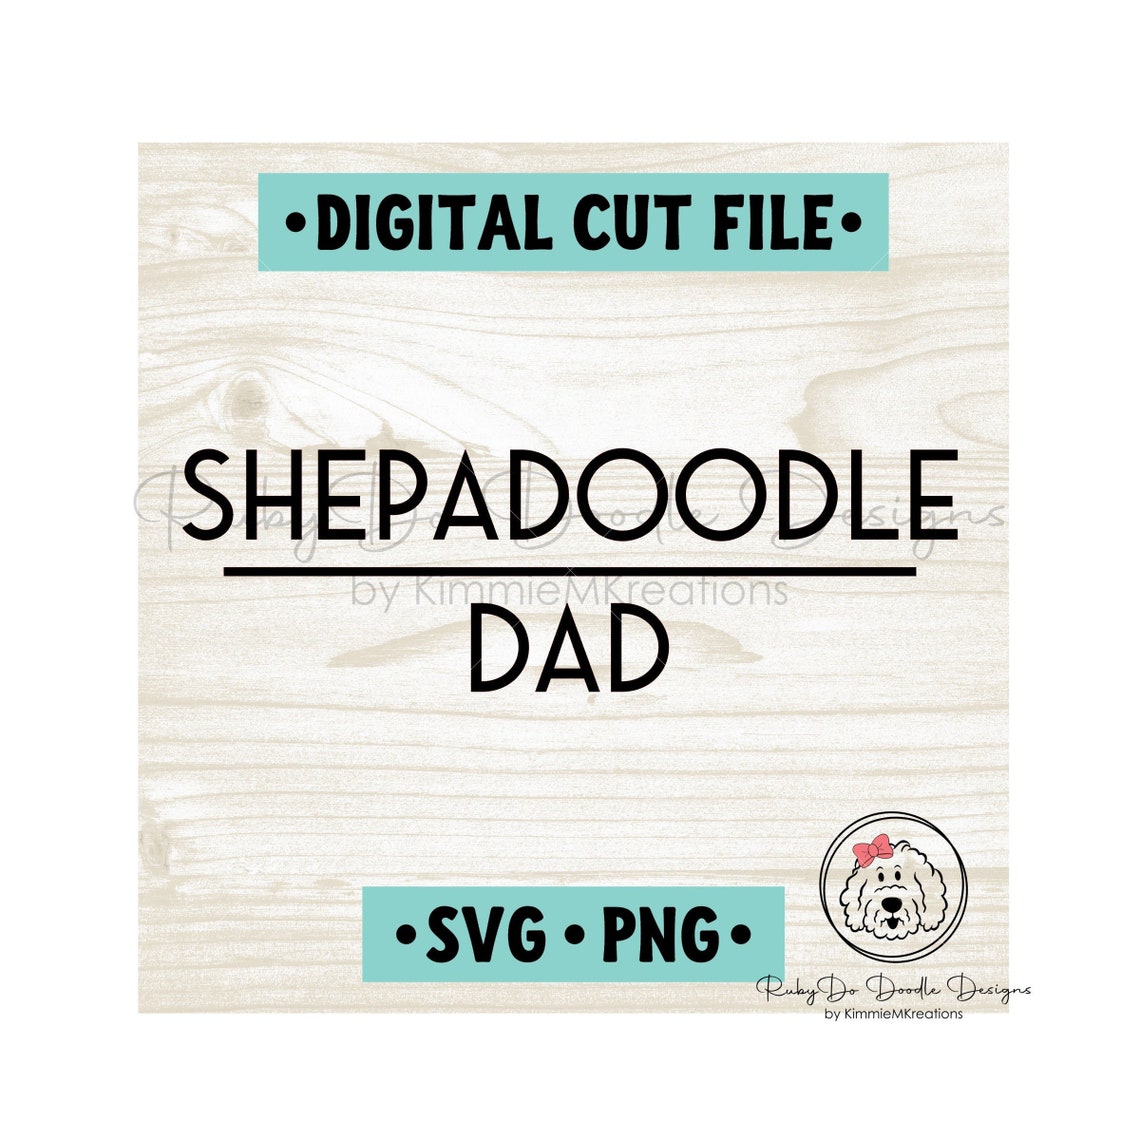 Sheepadoodle Dad SVG Instant Download Digital Cut File | Etsy